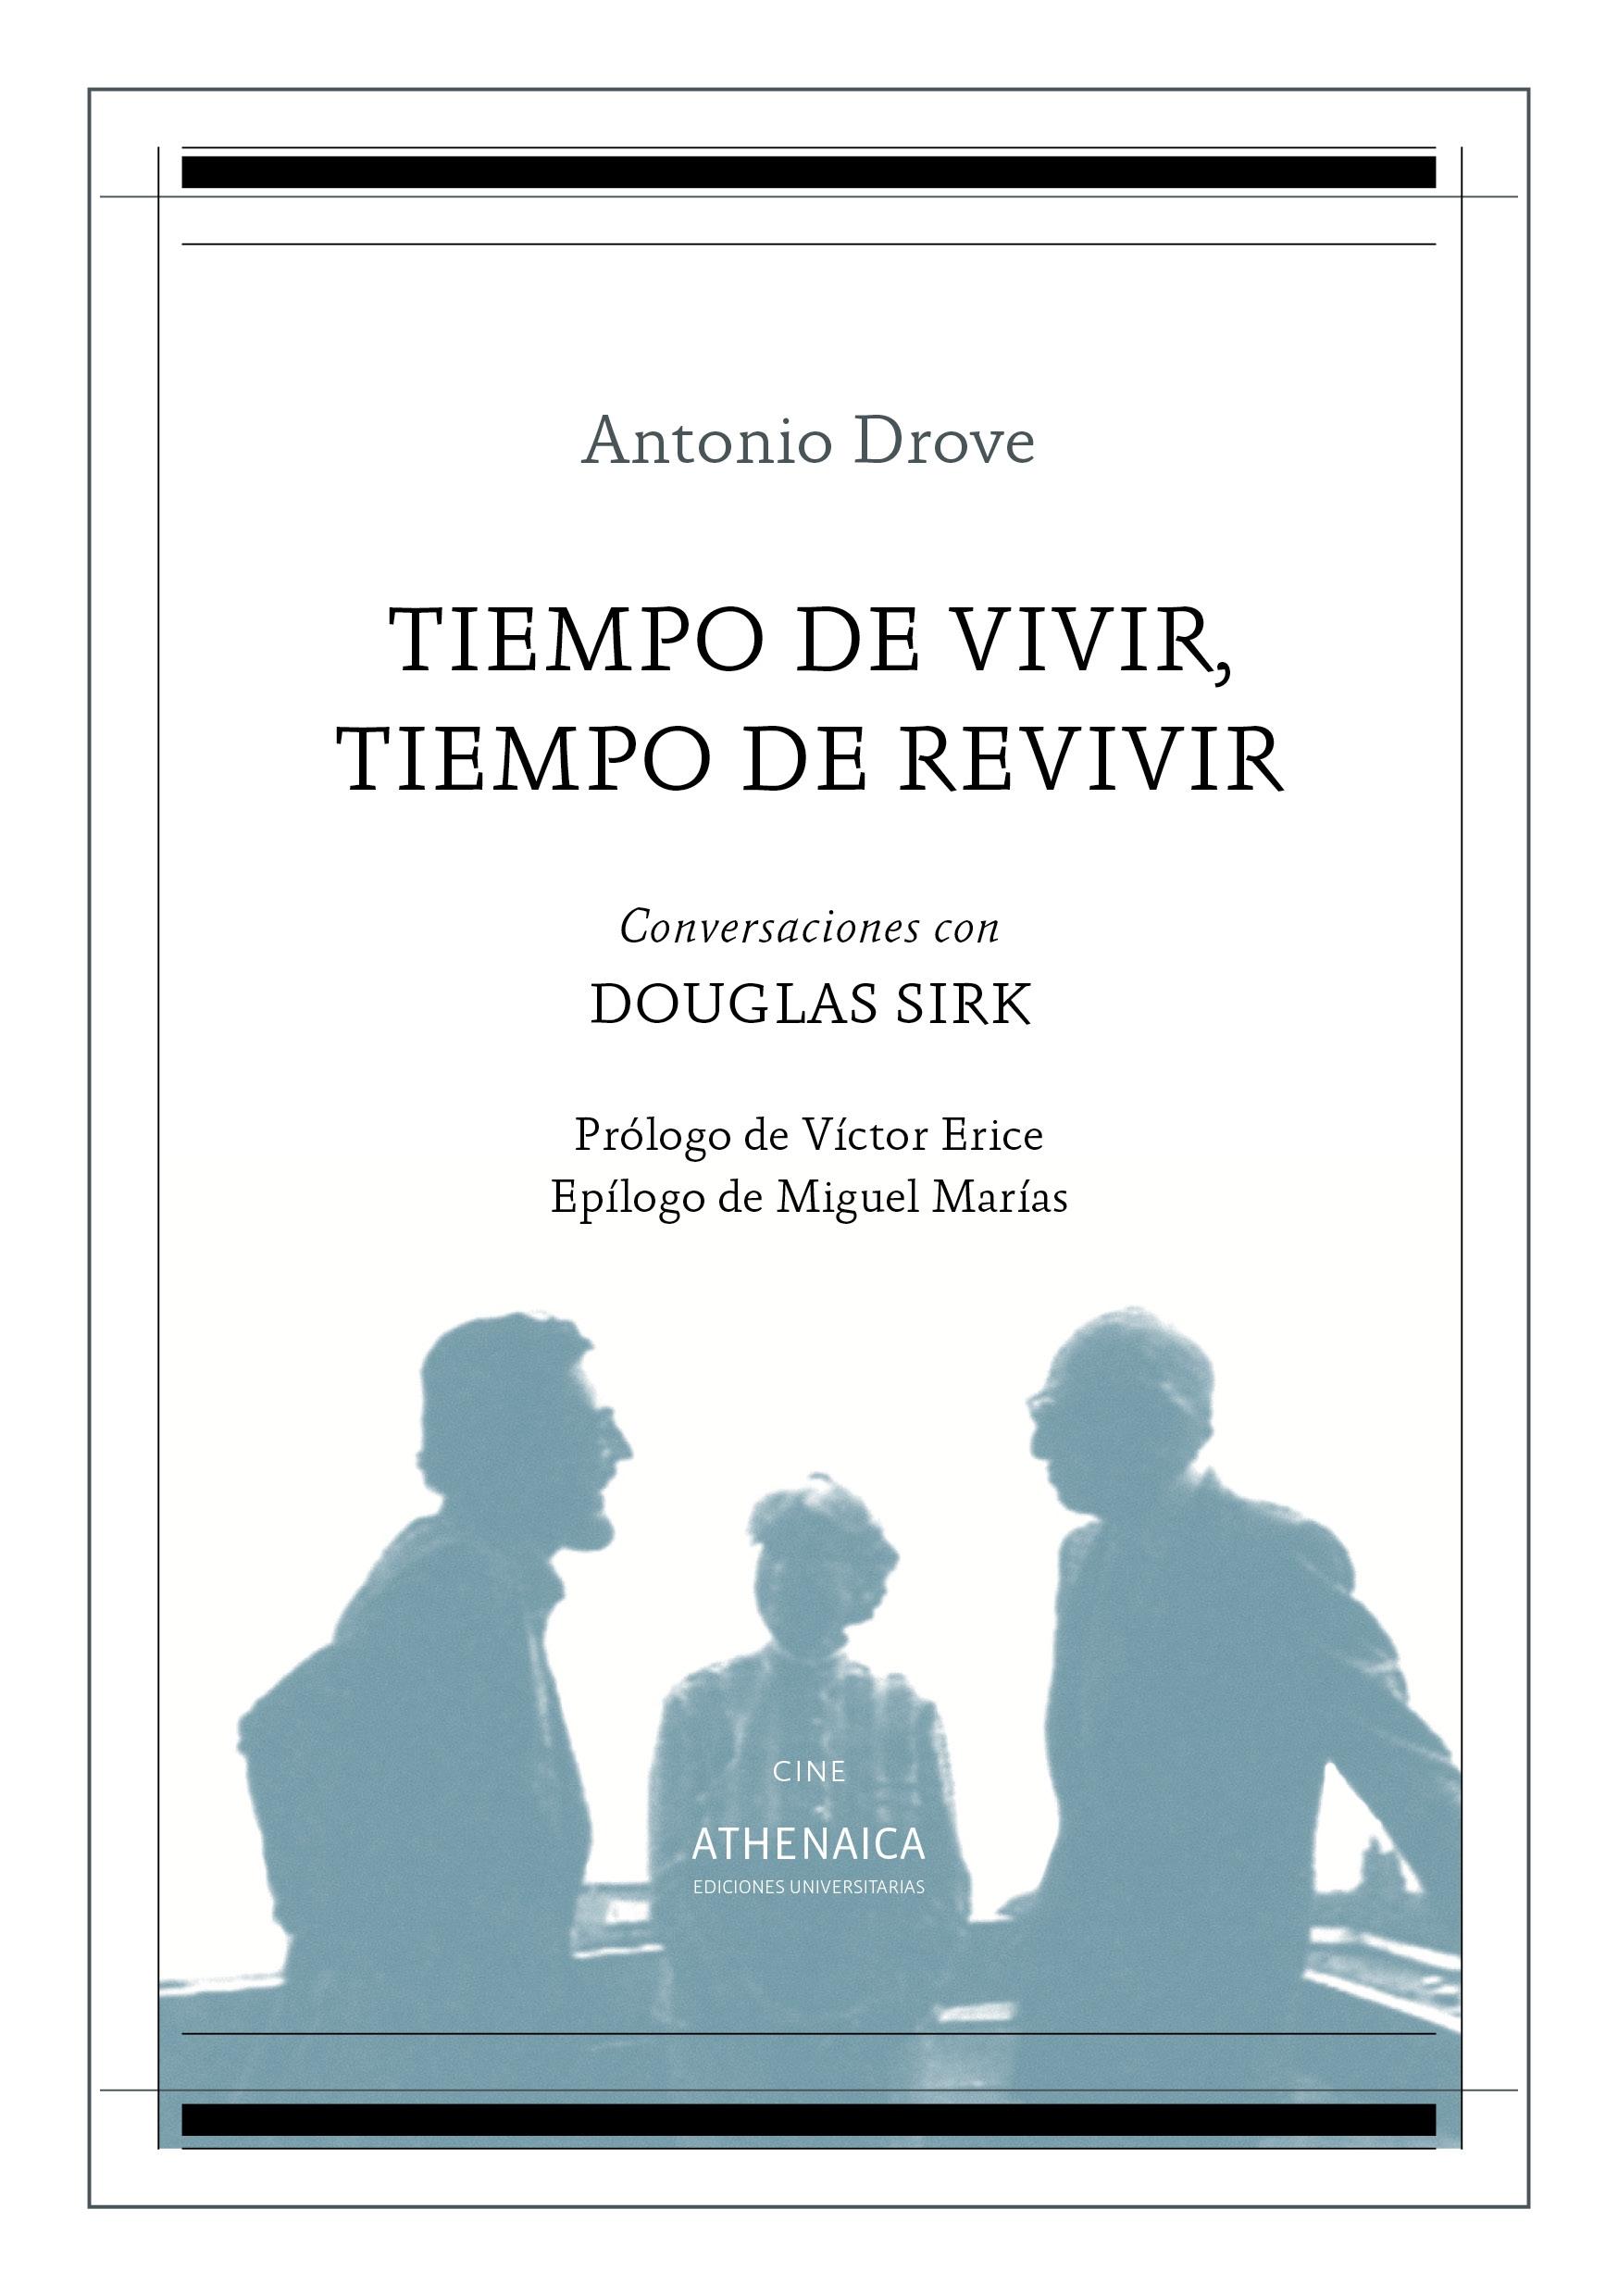 Tiempo de Vivir, Tiempo de Revivir "Conversaciones con Douglas Sirk"